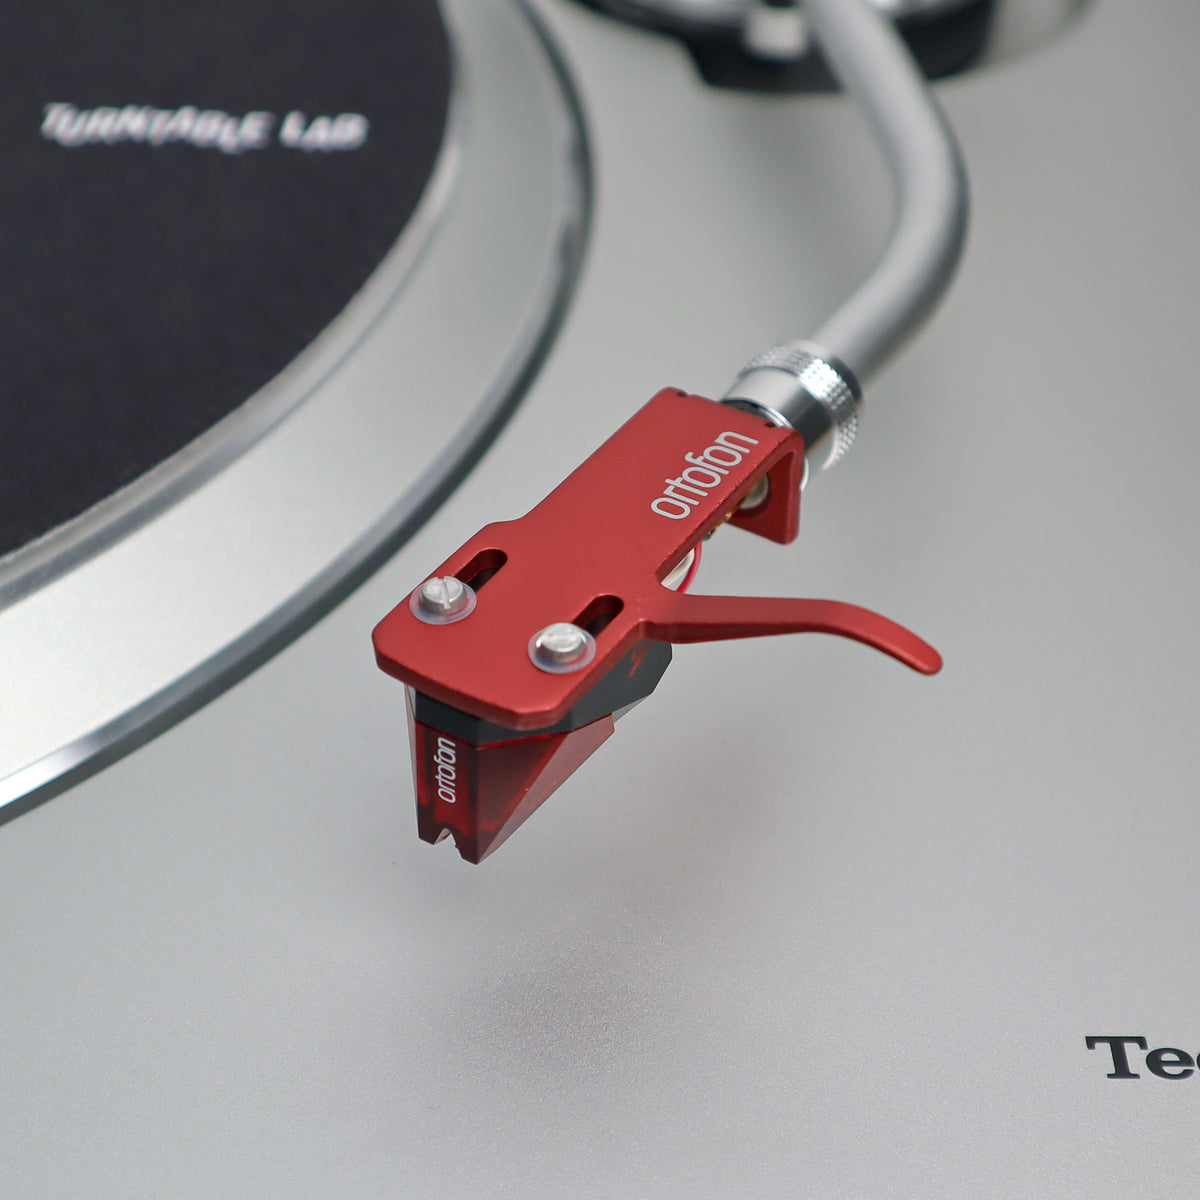 paritet klar Verdensrekord Guinness Book Ortofon: 2M Red Cartridge Mounted on SH-4 Headshell (Red) — TurntableLab.com